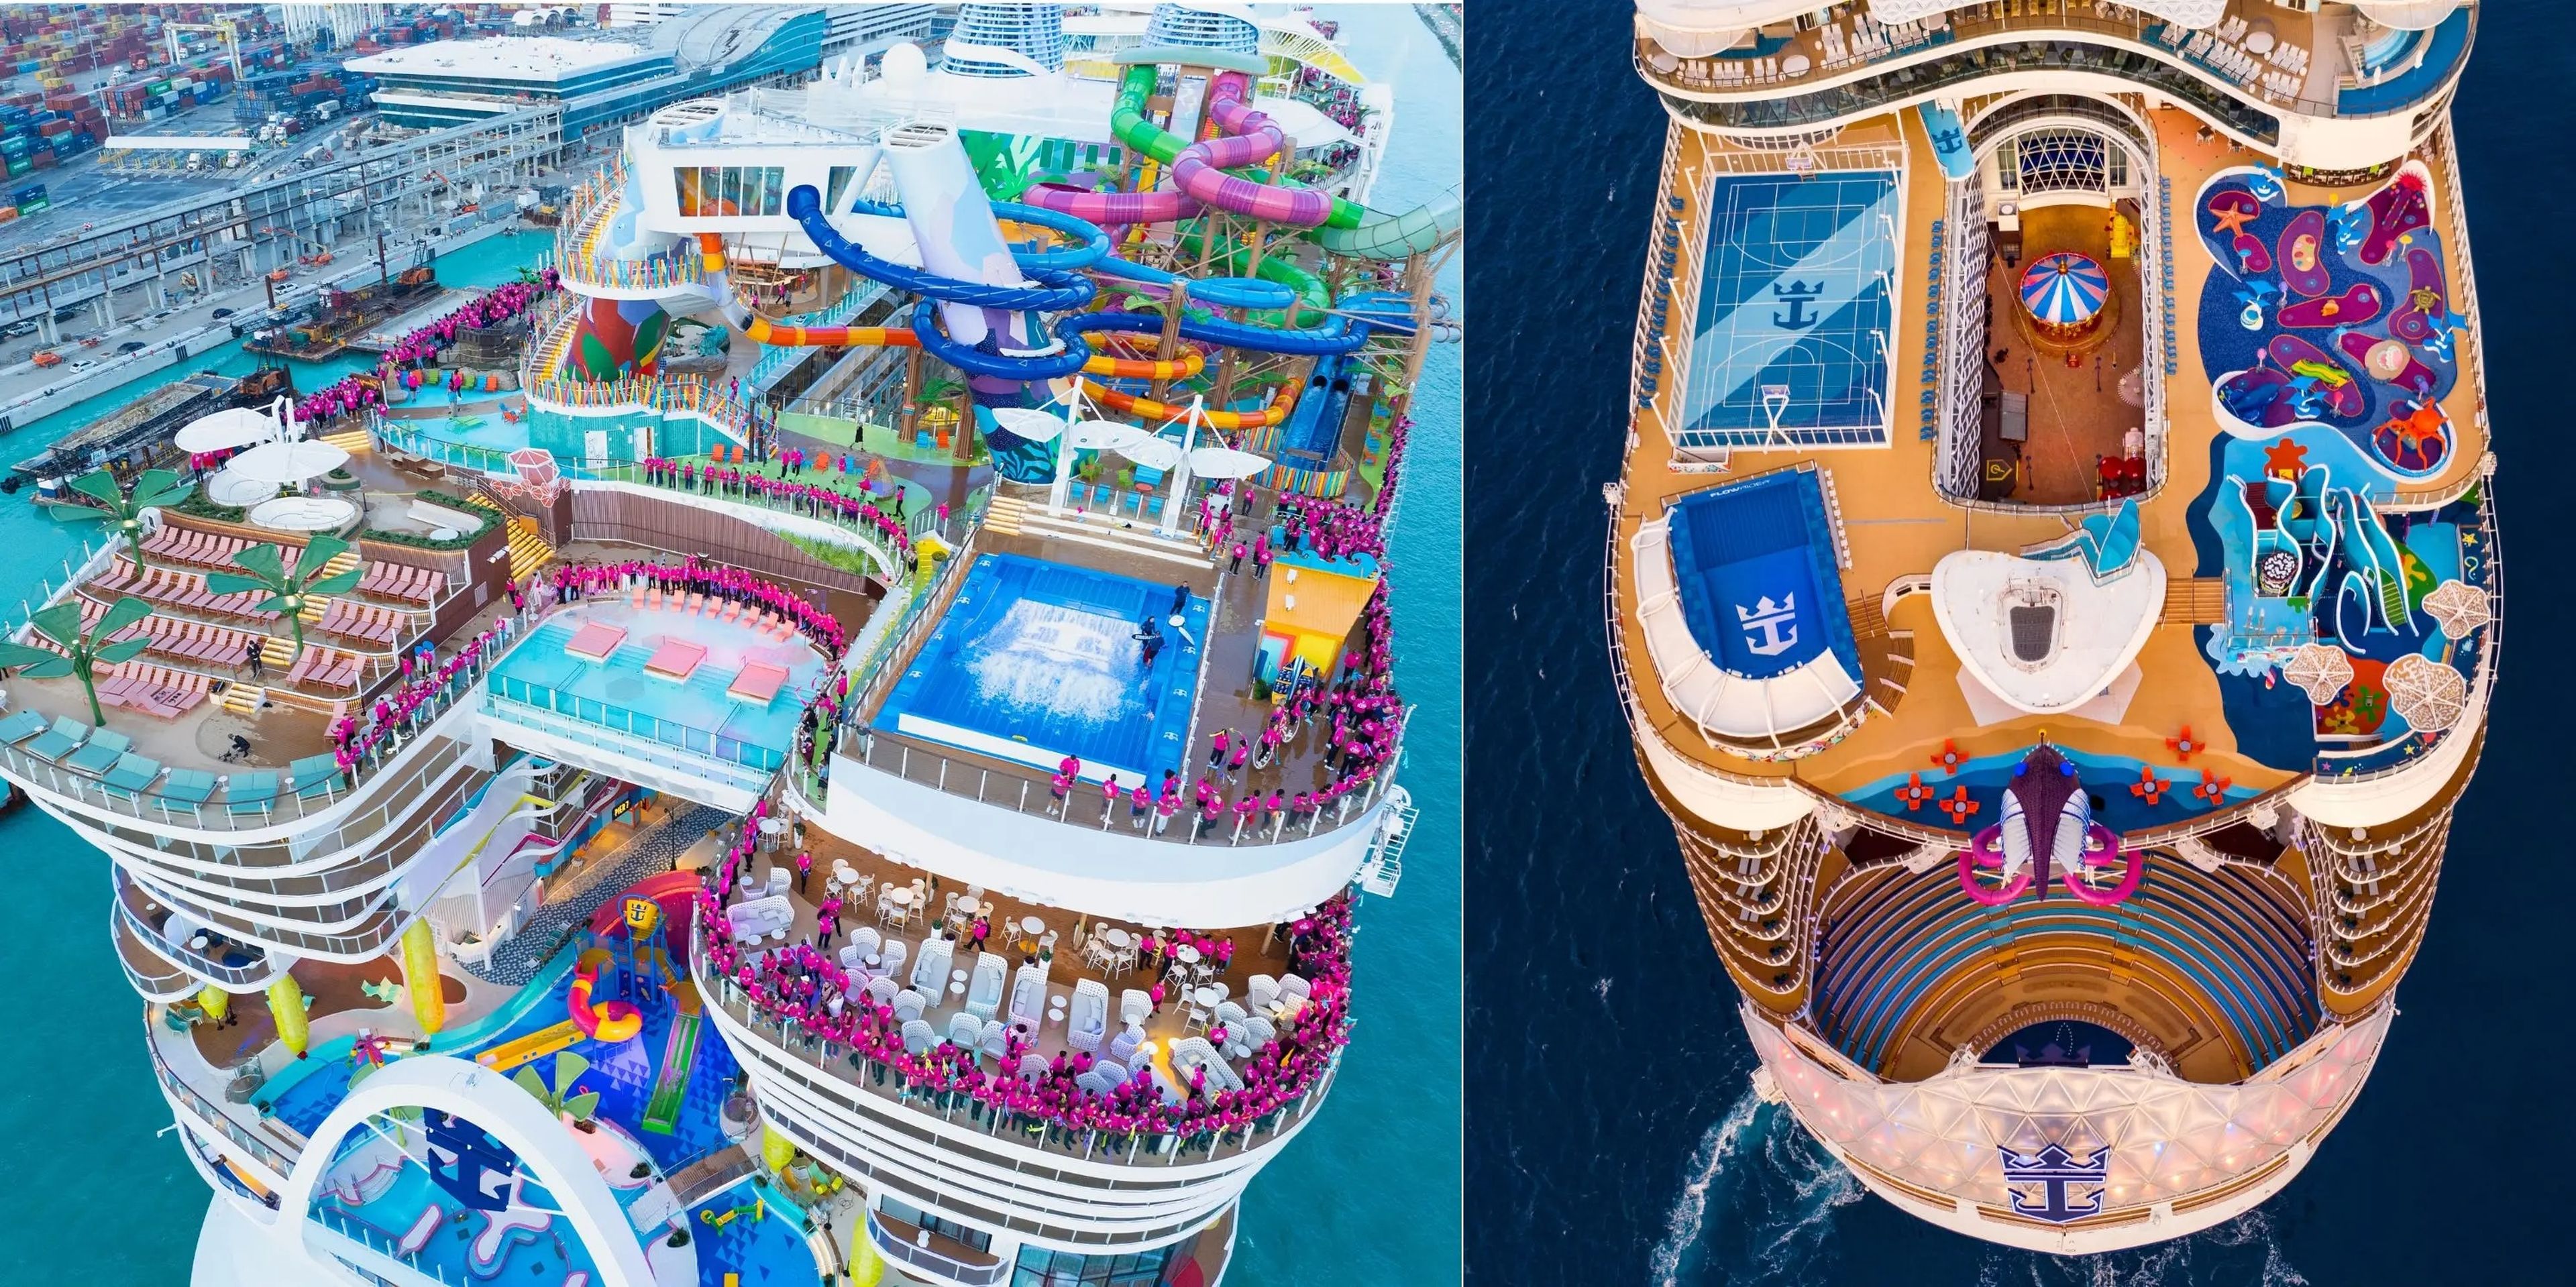 El Icon of the Seas, a la izquierda, y el Wonder of the Seas, a la derecha, son los dos cruceros más grandes del mundo, cada uno con una lista de coloridas instalaciones para toda la familia. 